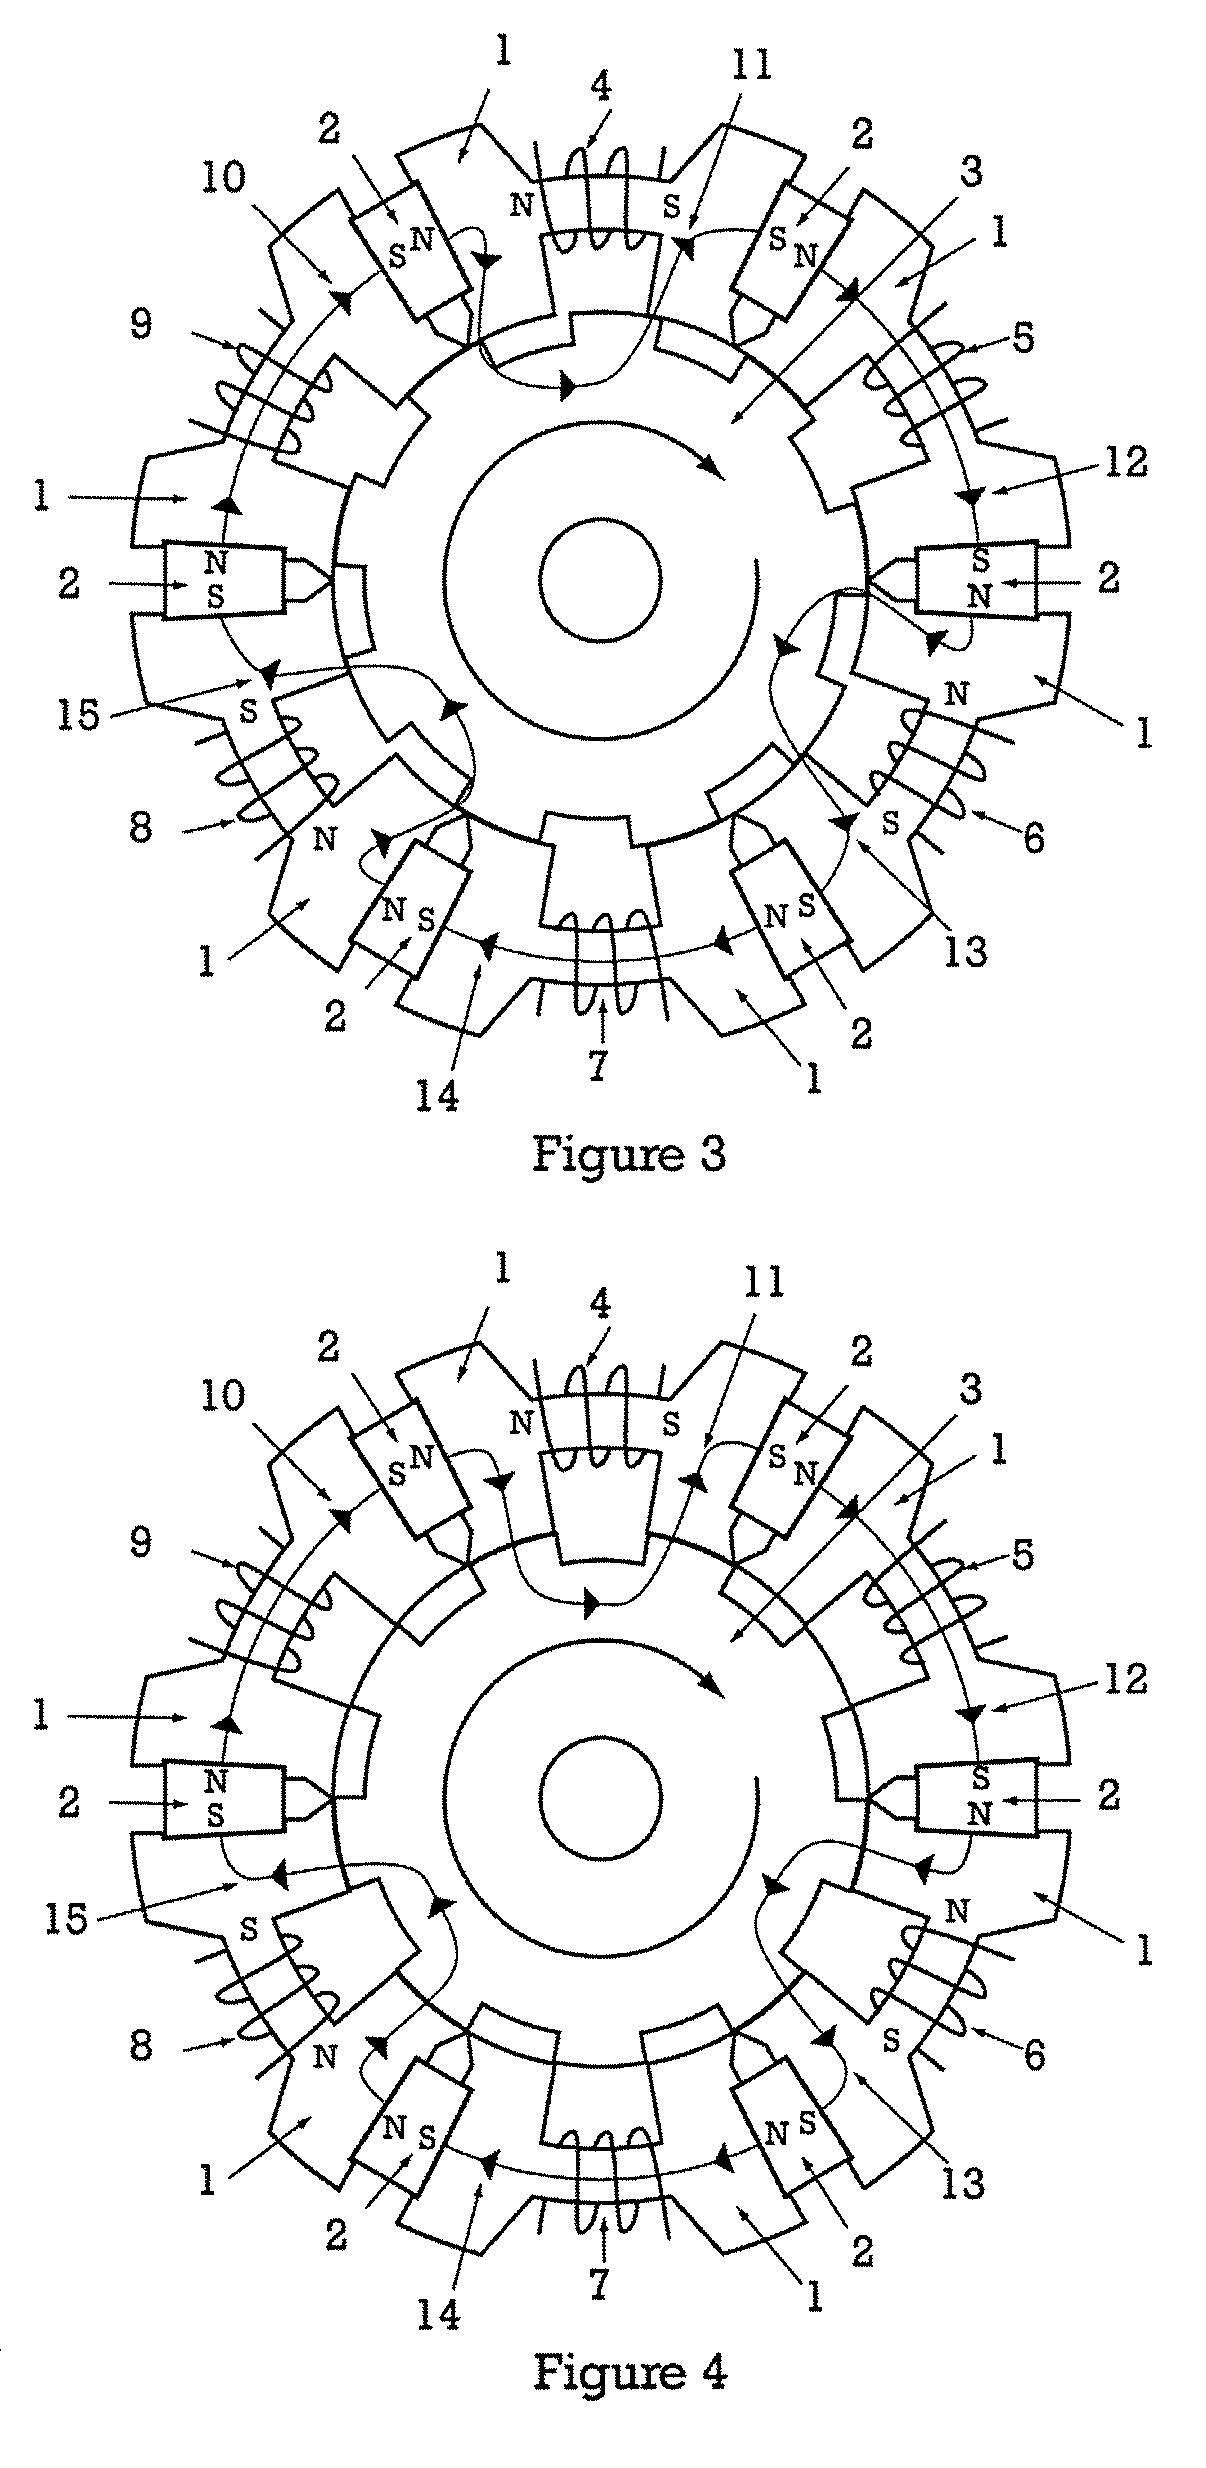 Hybrid permanent magnet motor